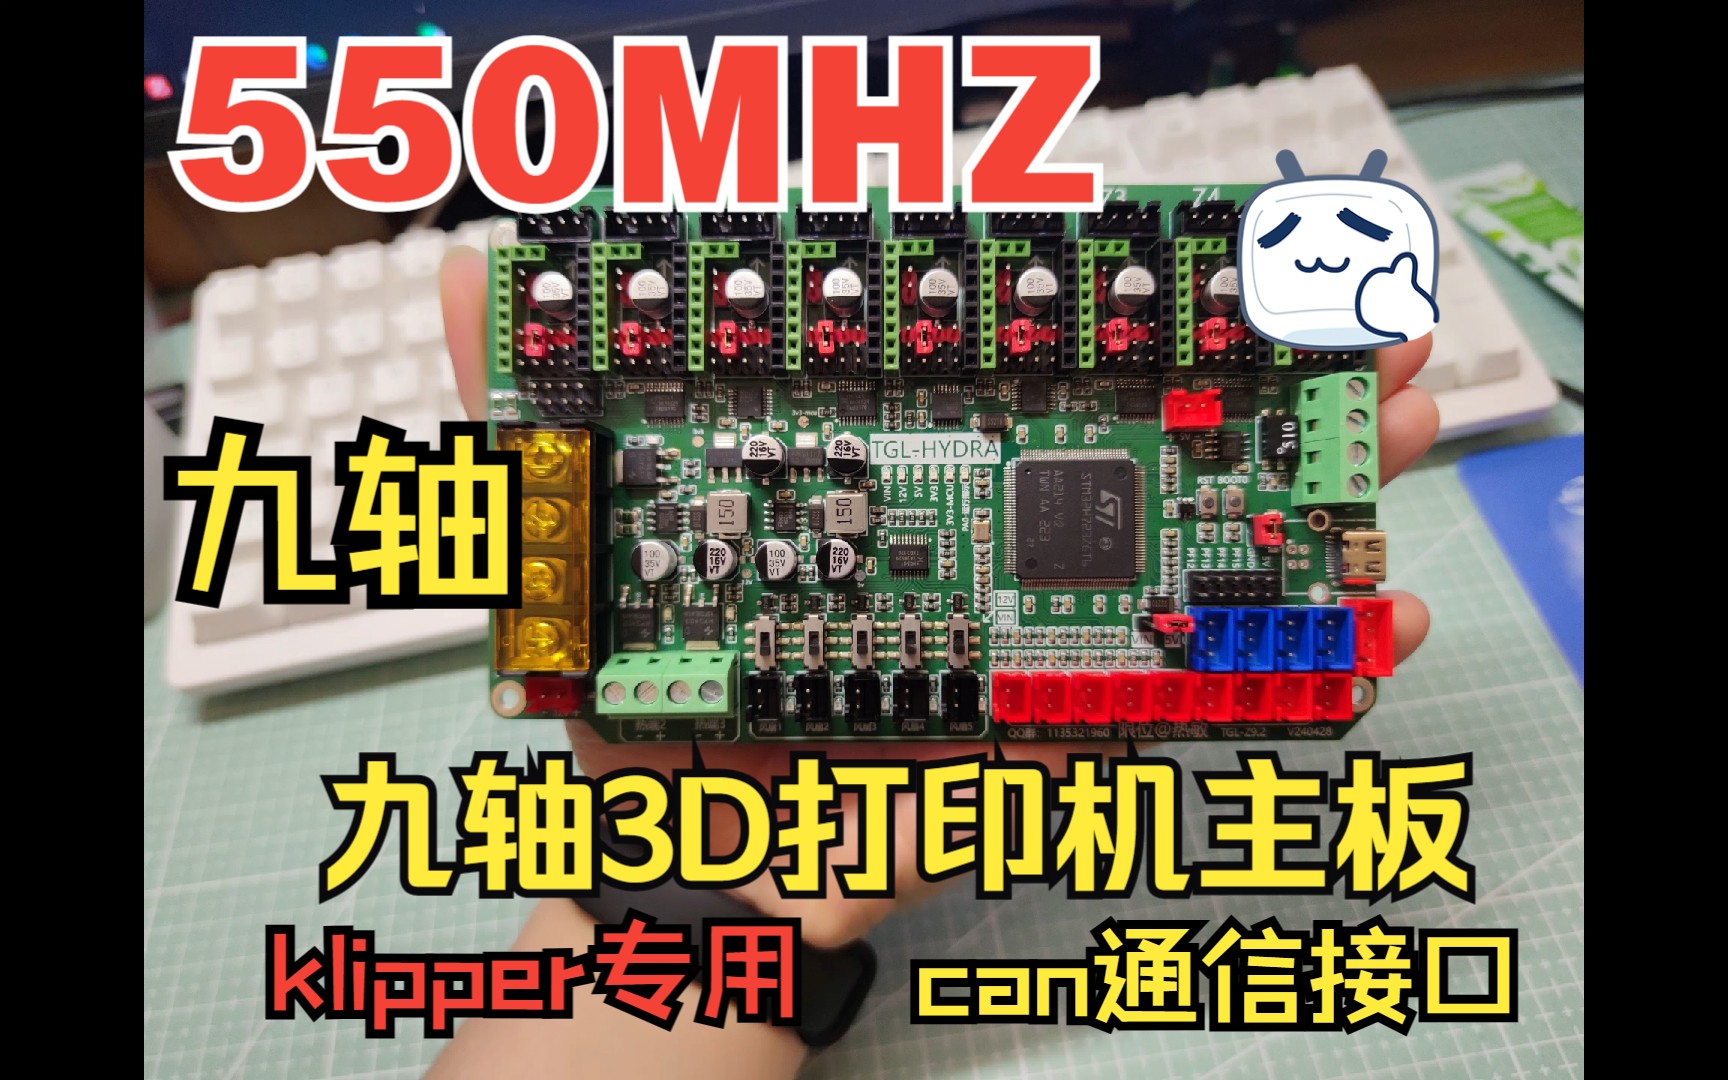 《开源》九轴STM32H723高性能3D打印机主板九头蛇主板 klipper固件板载can通信接口550MHZ主频超高性能